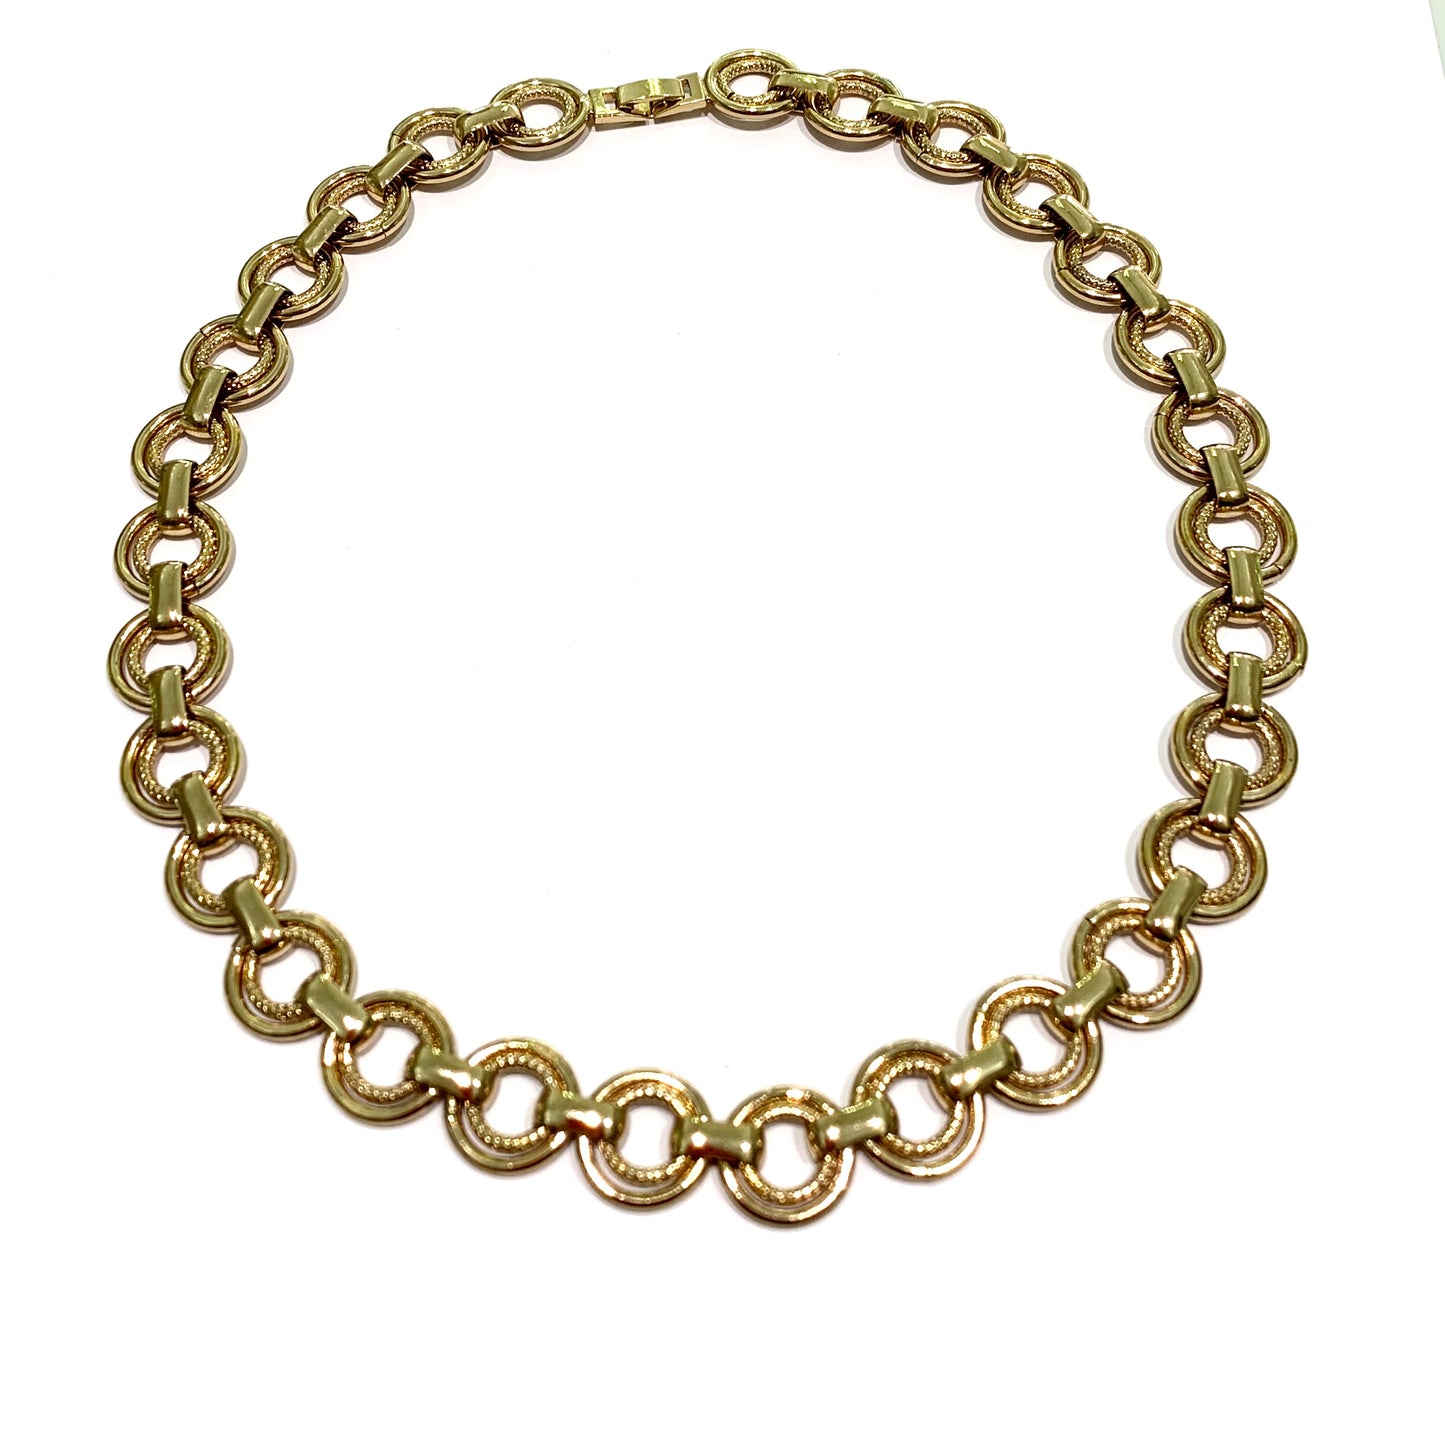 Collana girocollo in bijoux bagnata in oro 14kt composta da cerchi.  Lunghezza catena 50 cm.  Larghezza catena 1,5 cm.  Spedizione gratuita con confezione regalo.  